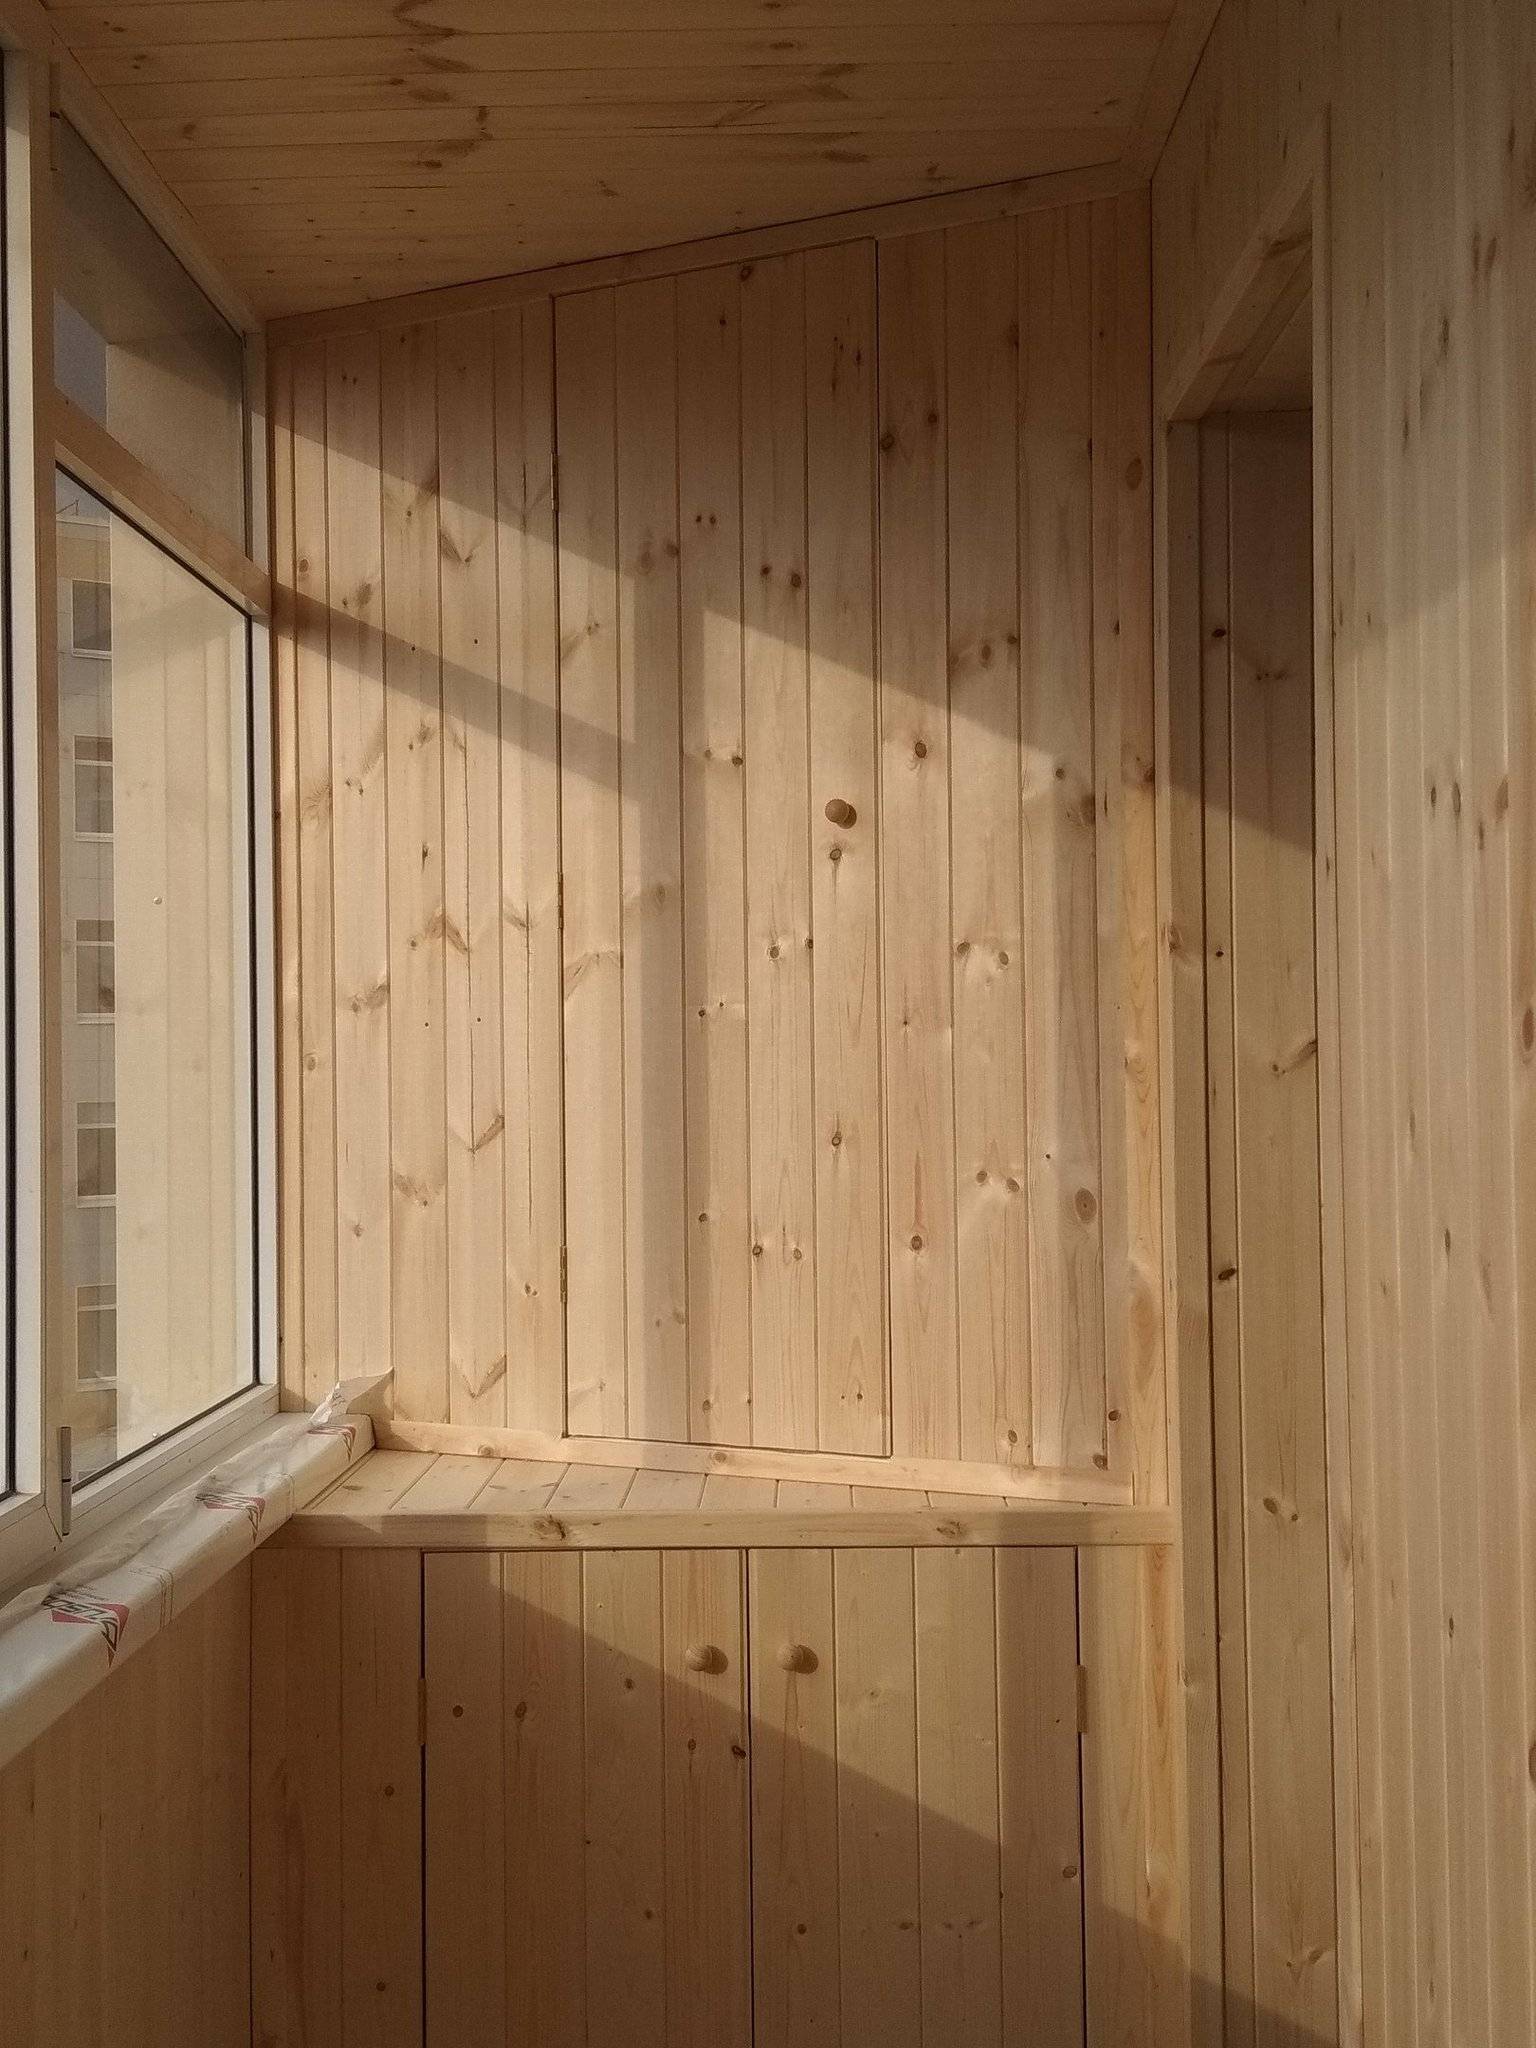 Обшивка балкона вагонкой своими руками: выбор материала и технология отделки (видео)